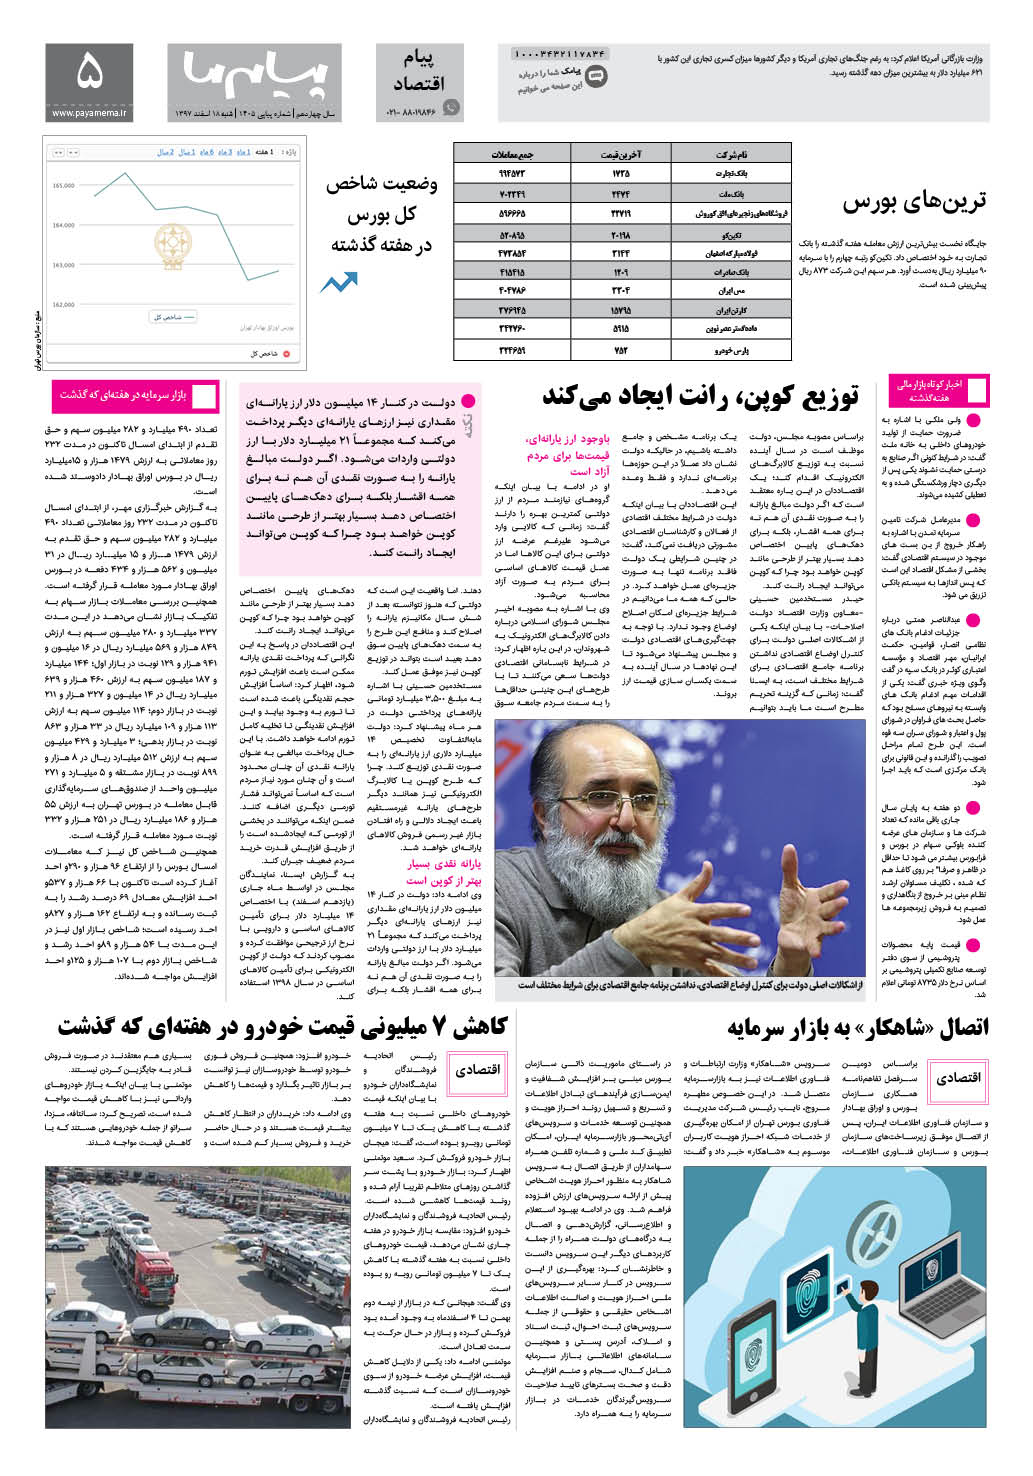 صفحه پیام اقتصادی شماره 1405 روزنامه پیام ما